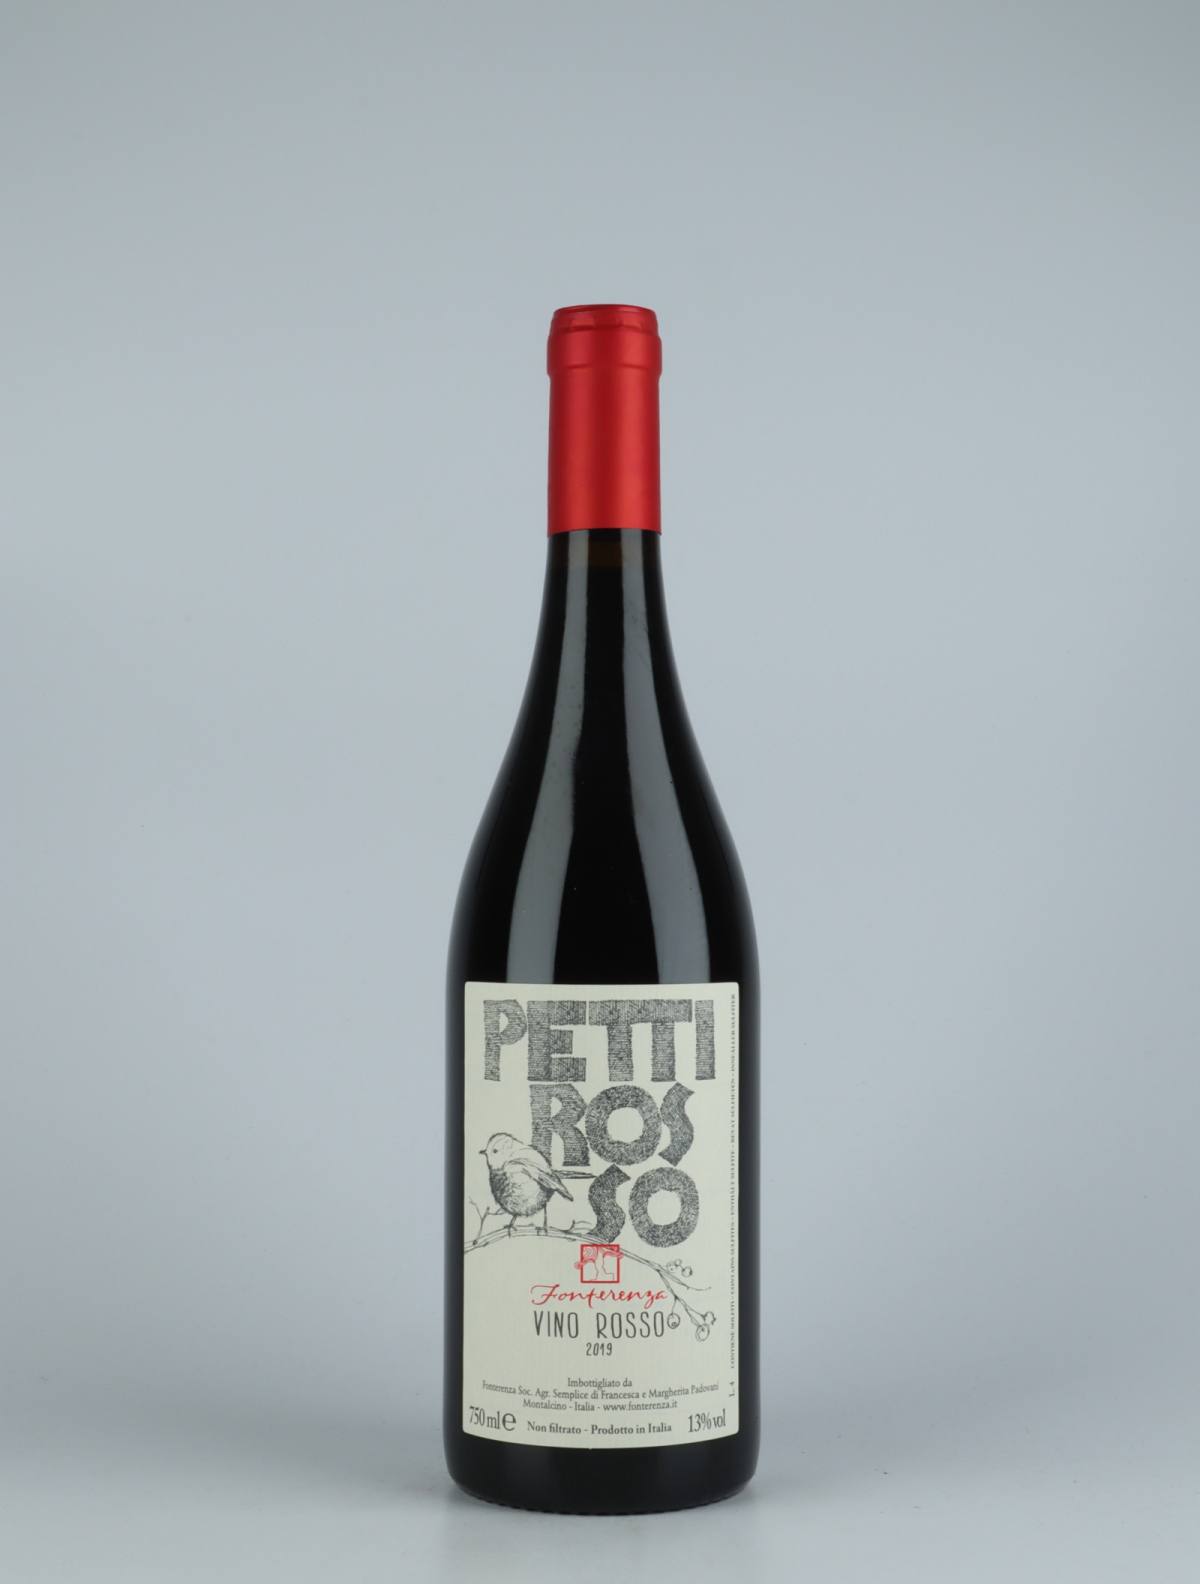 En flaske 2019 Pettirosso Rødvin fra Fonterenza, Toscana i Italien